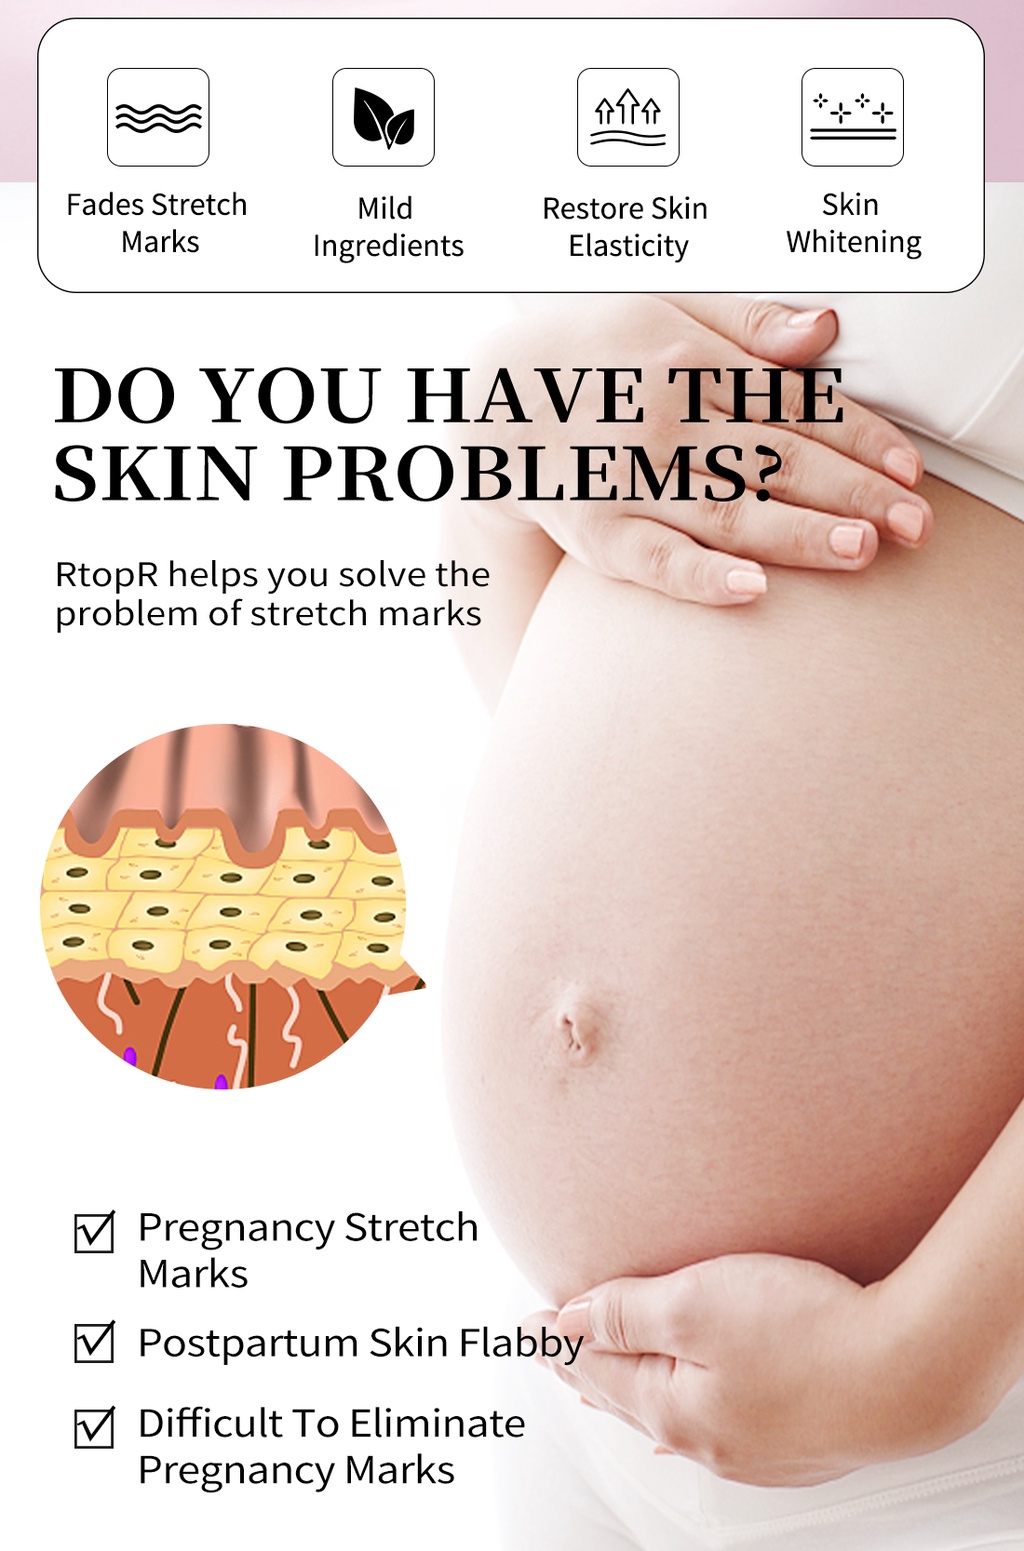 รูปภาพเพิ่มเติมของ RtopR FDA มะม่วงครีมบํารุงผิว ลดรอยแผลเป็น รอยแตกลาย ครีมทาท้องลาย ลดรอยแตกลาย ท้องลาย ริ้วรอยจากการตั้งครรภ์ - Stretch Mark Cream 40 กรัม